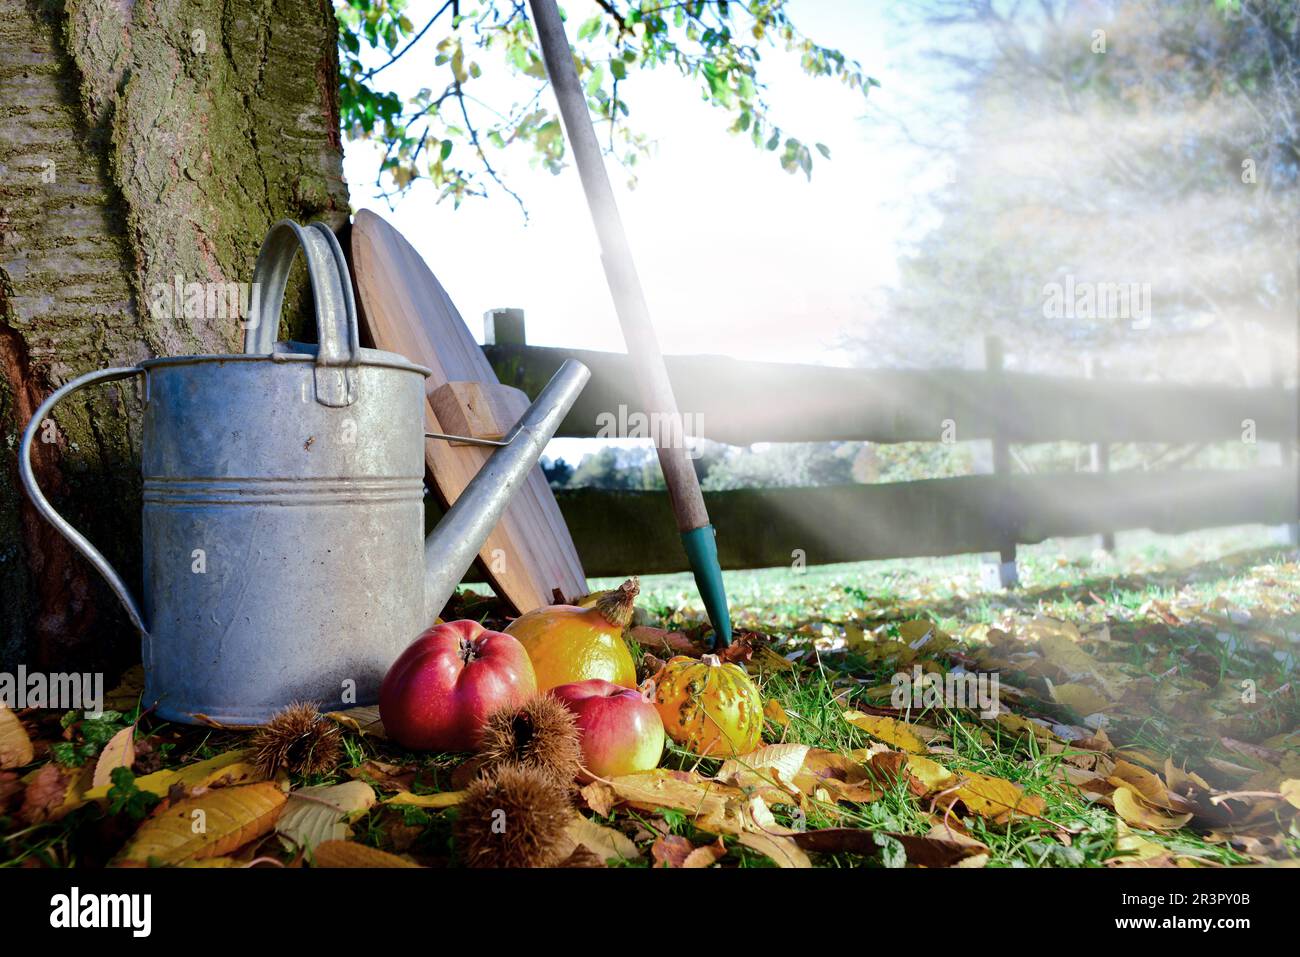 Annaffiatoio, mele, castagne e rastrello in un giardino in una mattina misticosa, Germania Foto Stock